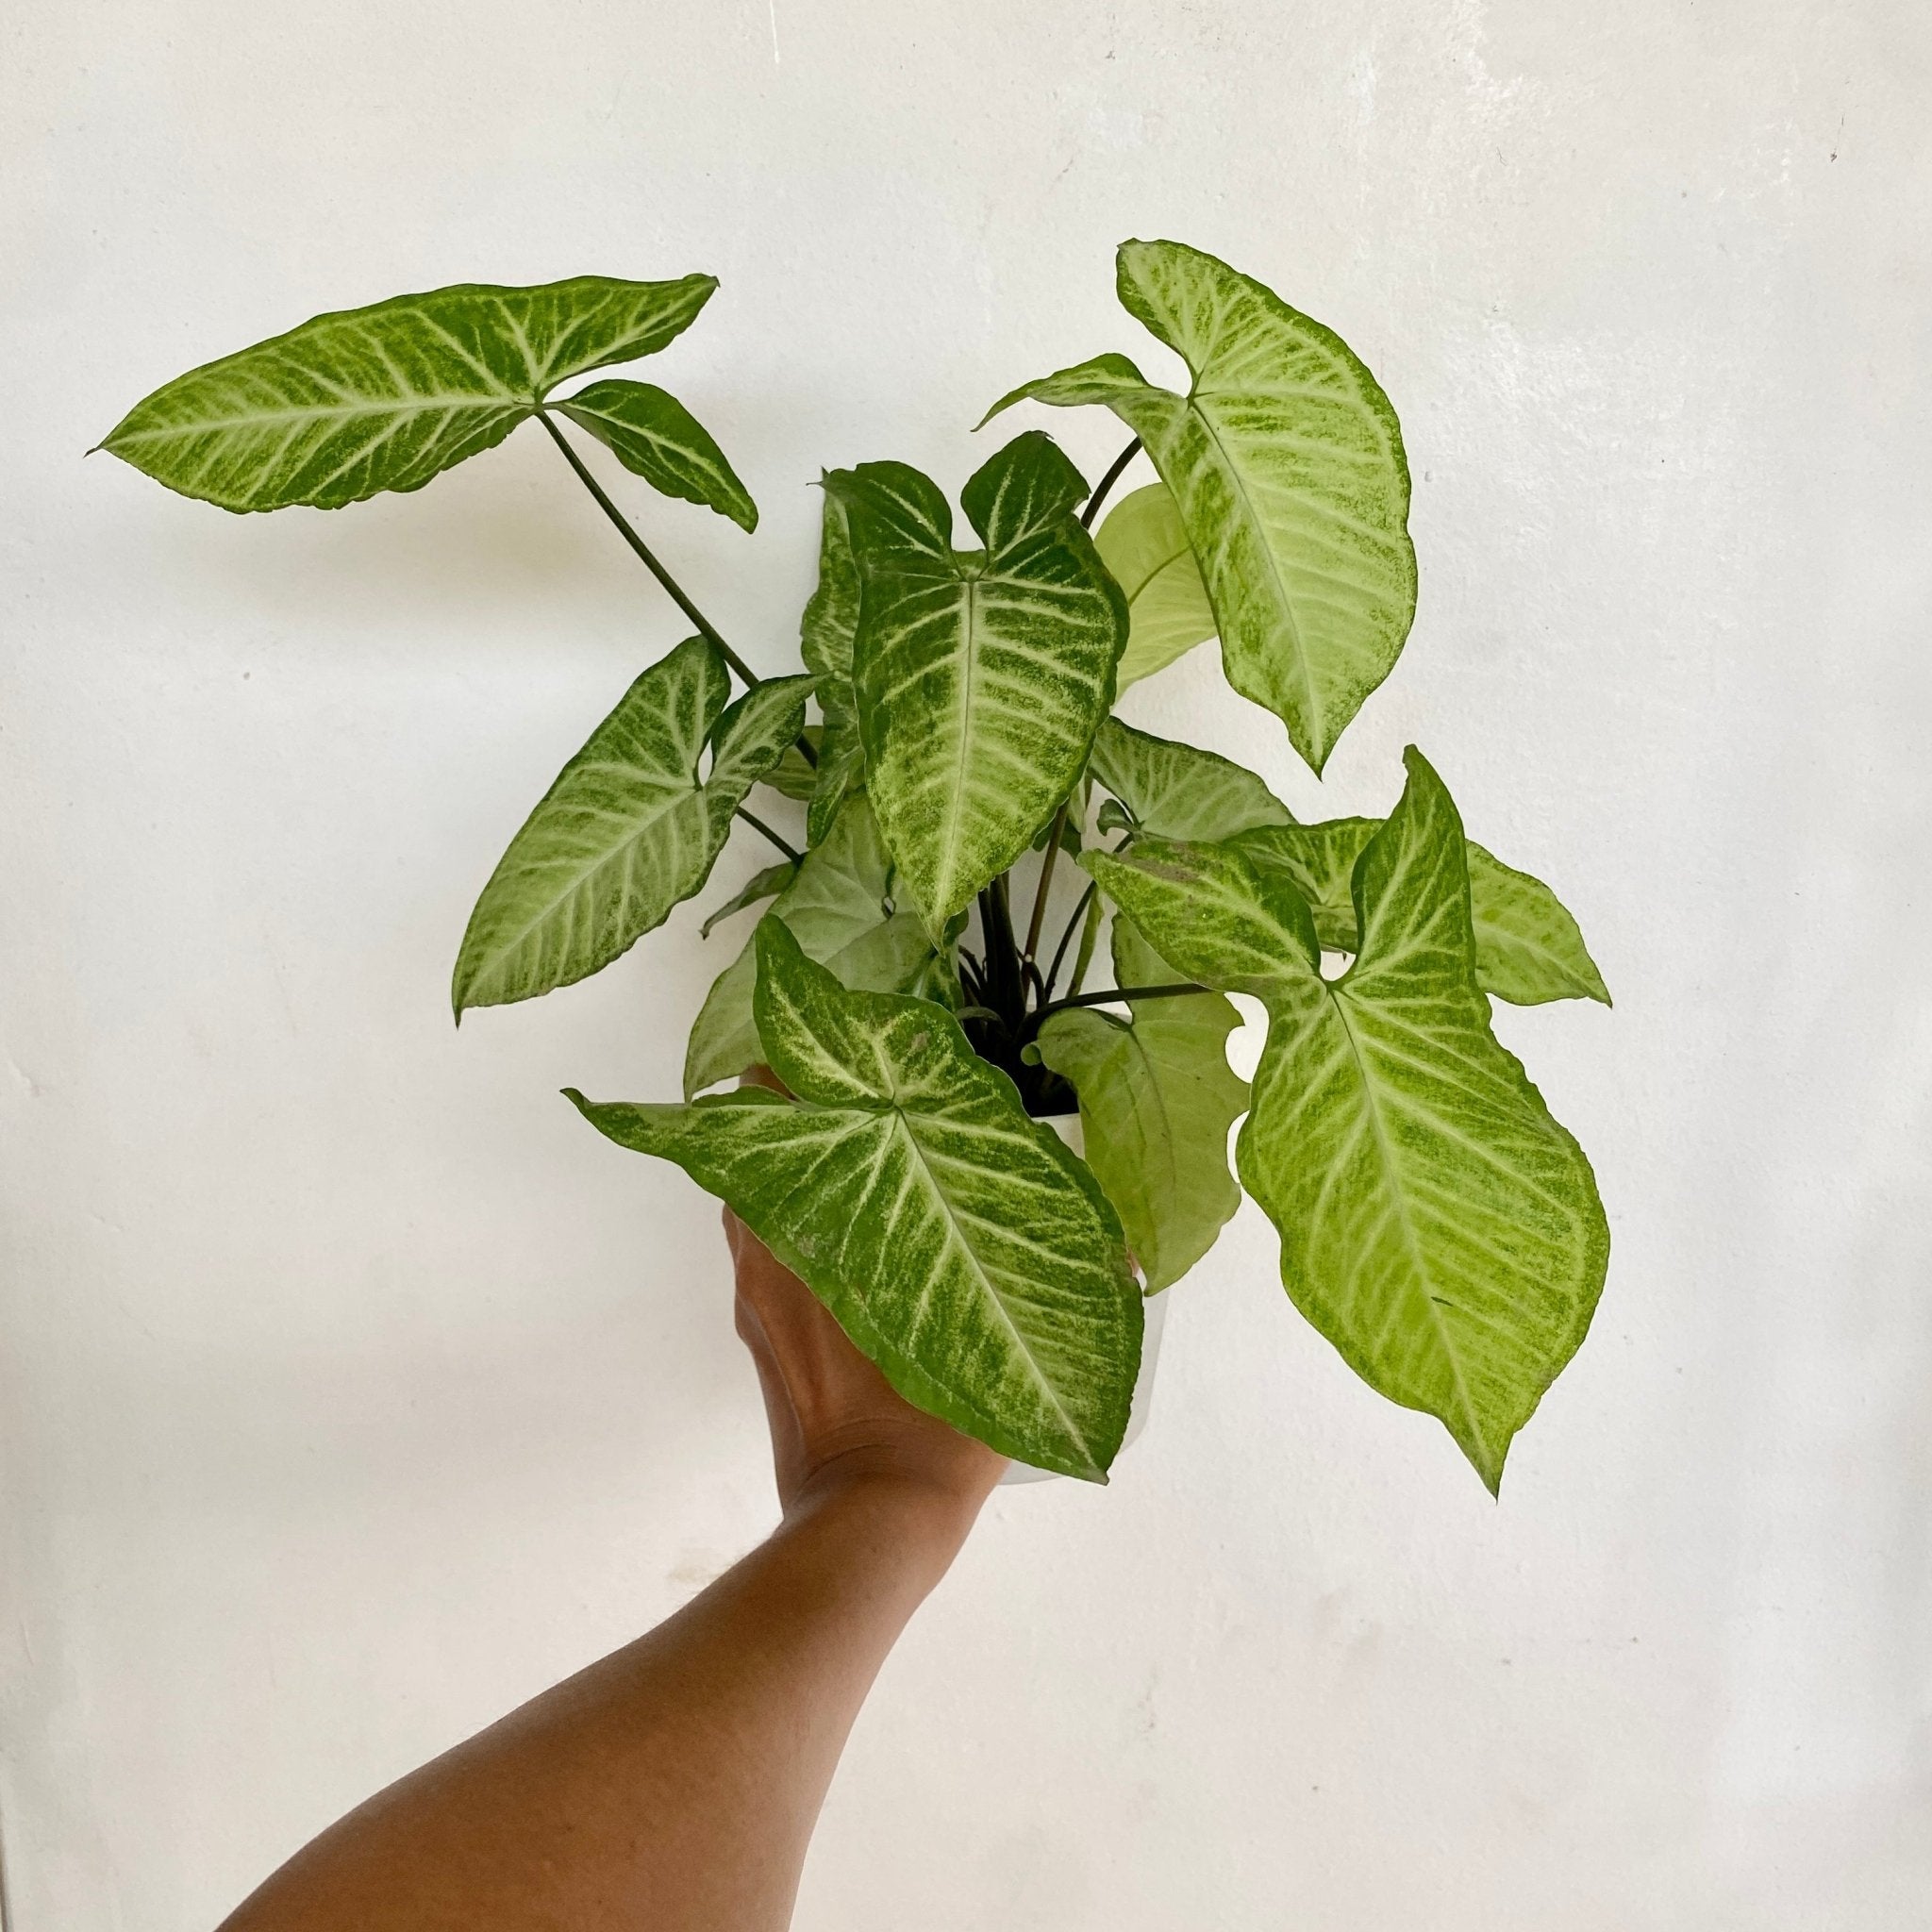 Arrowhead plant - Pots For Plants